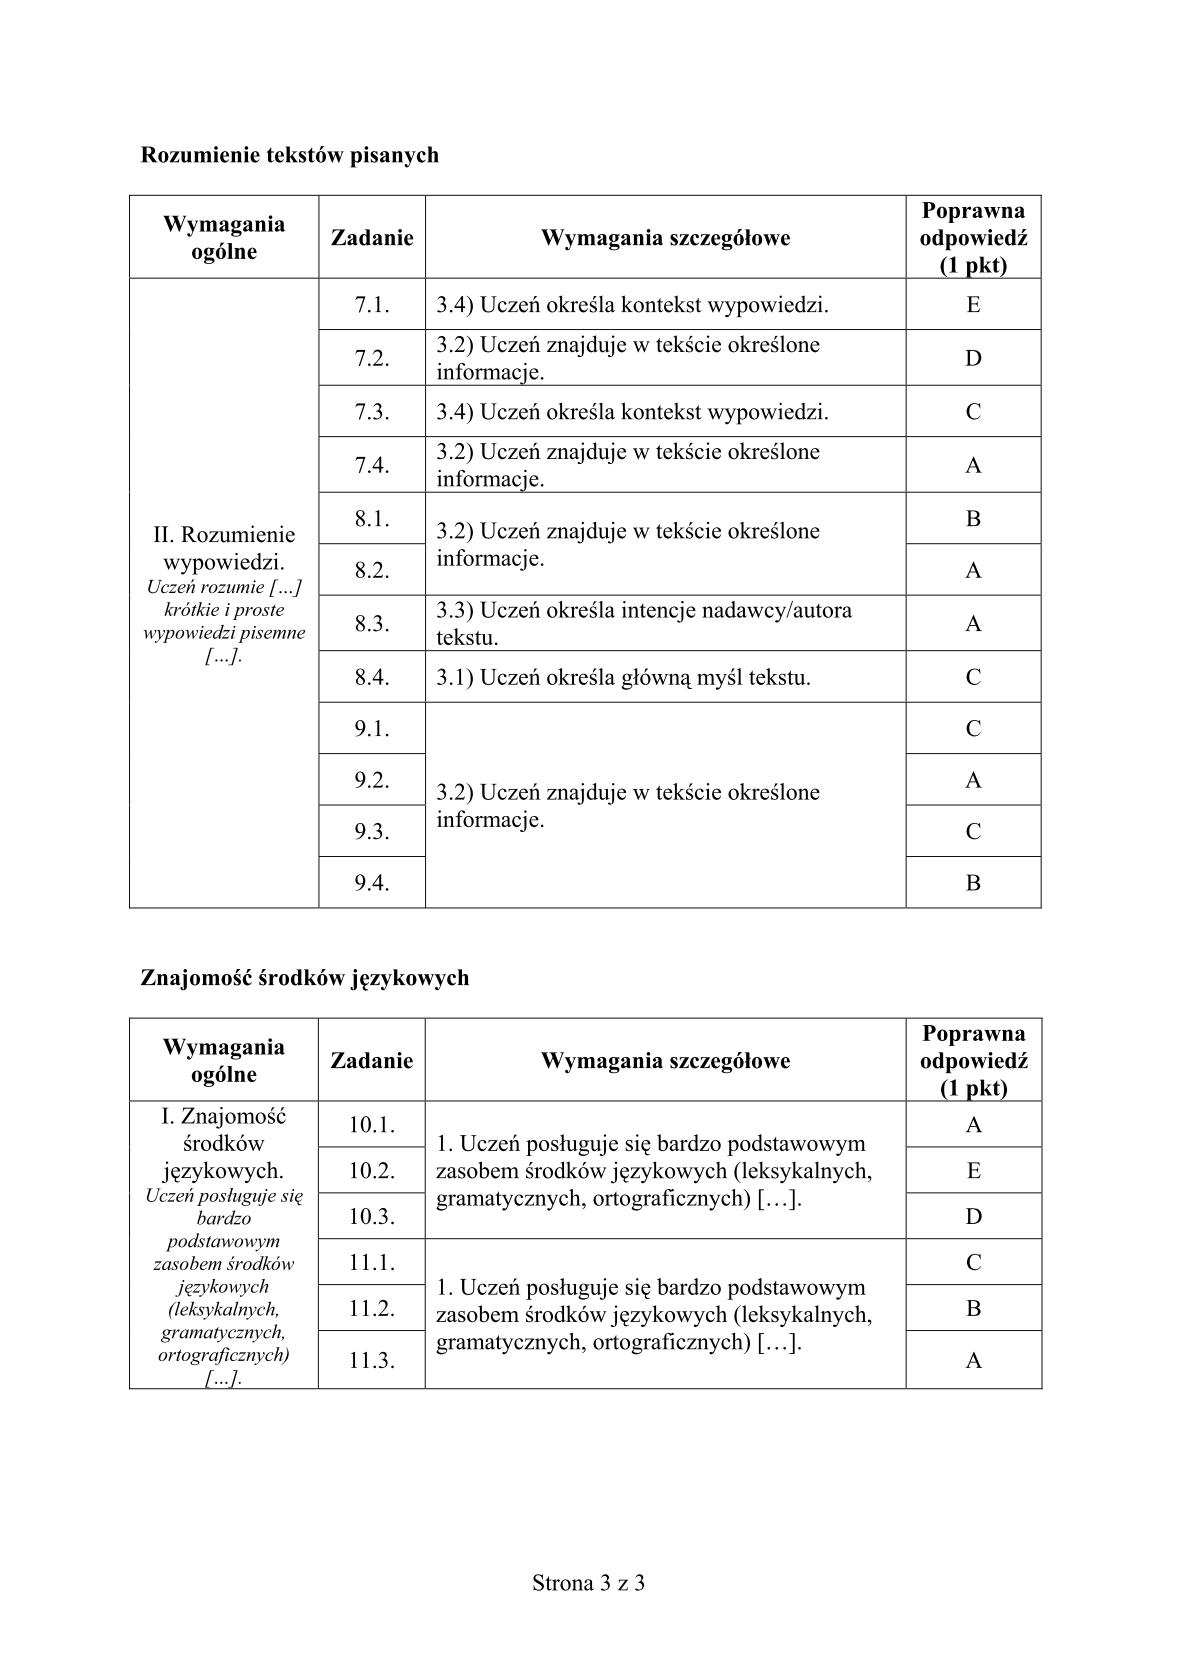 odpowiedzi-wloski-poziom-podstawowy-egzamin-gimnazjalny-25.04.2014-str.3